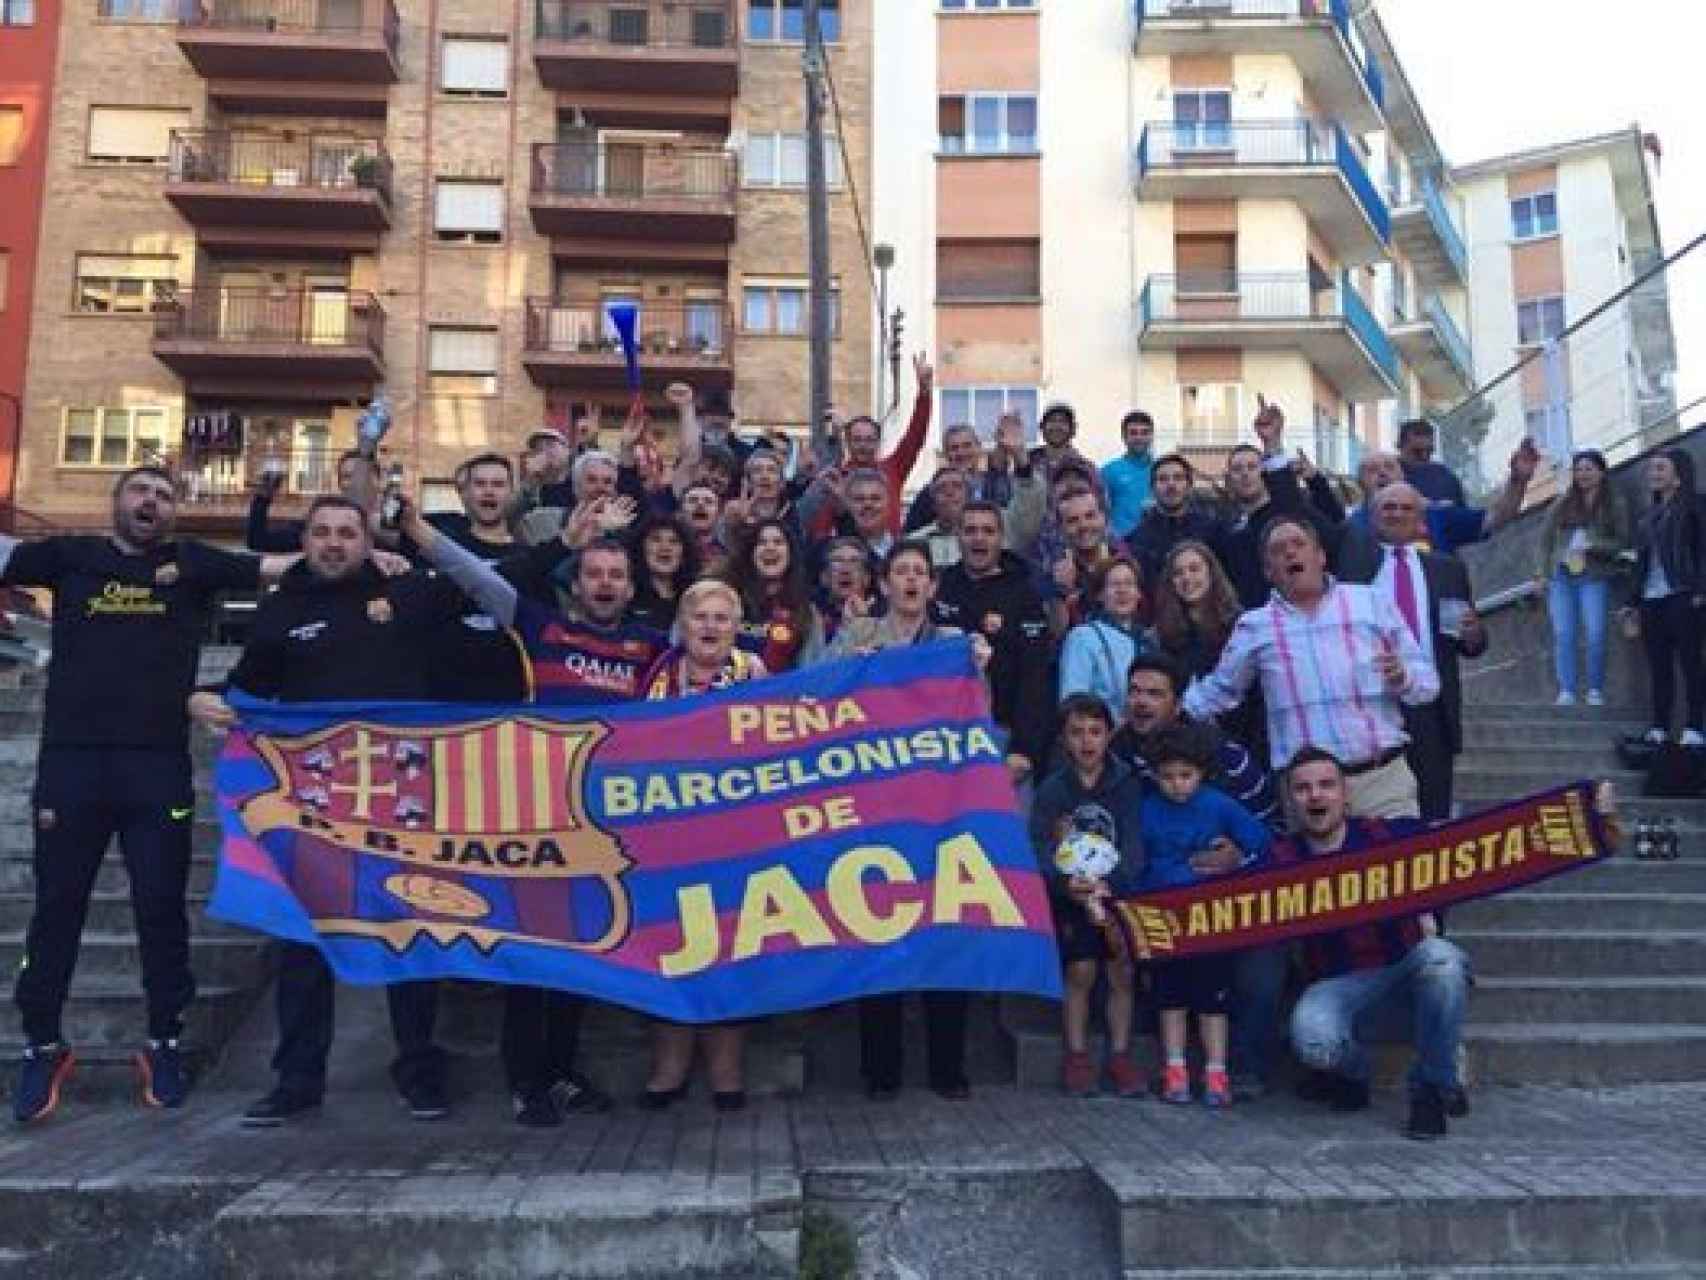 Peña Barcelonista de Jaca. En el Camp Nou no puedes sacar tranquilamente una bandera de España.